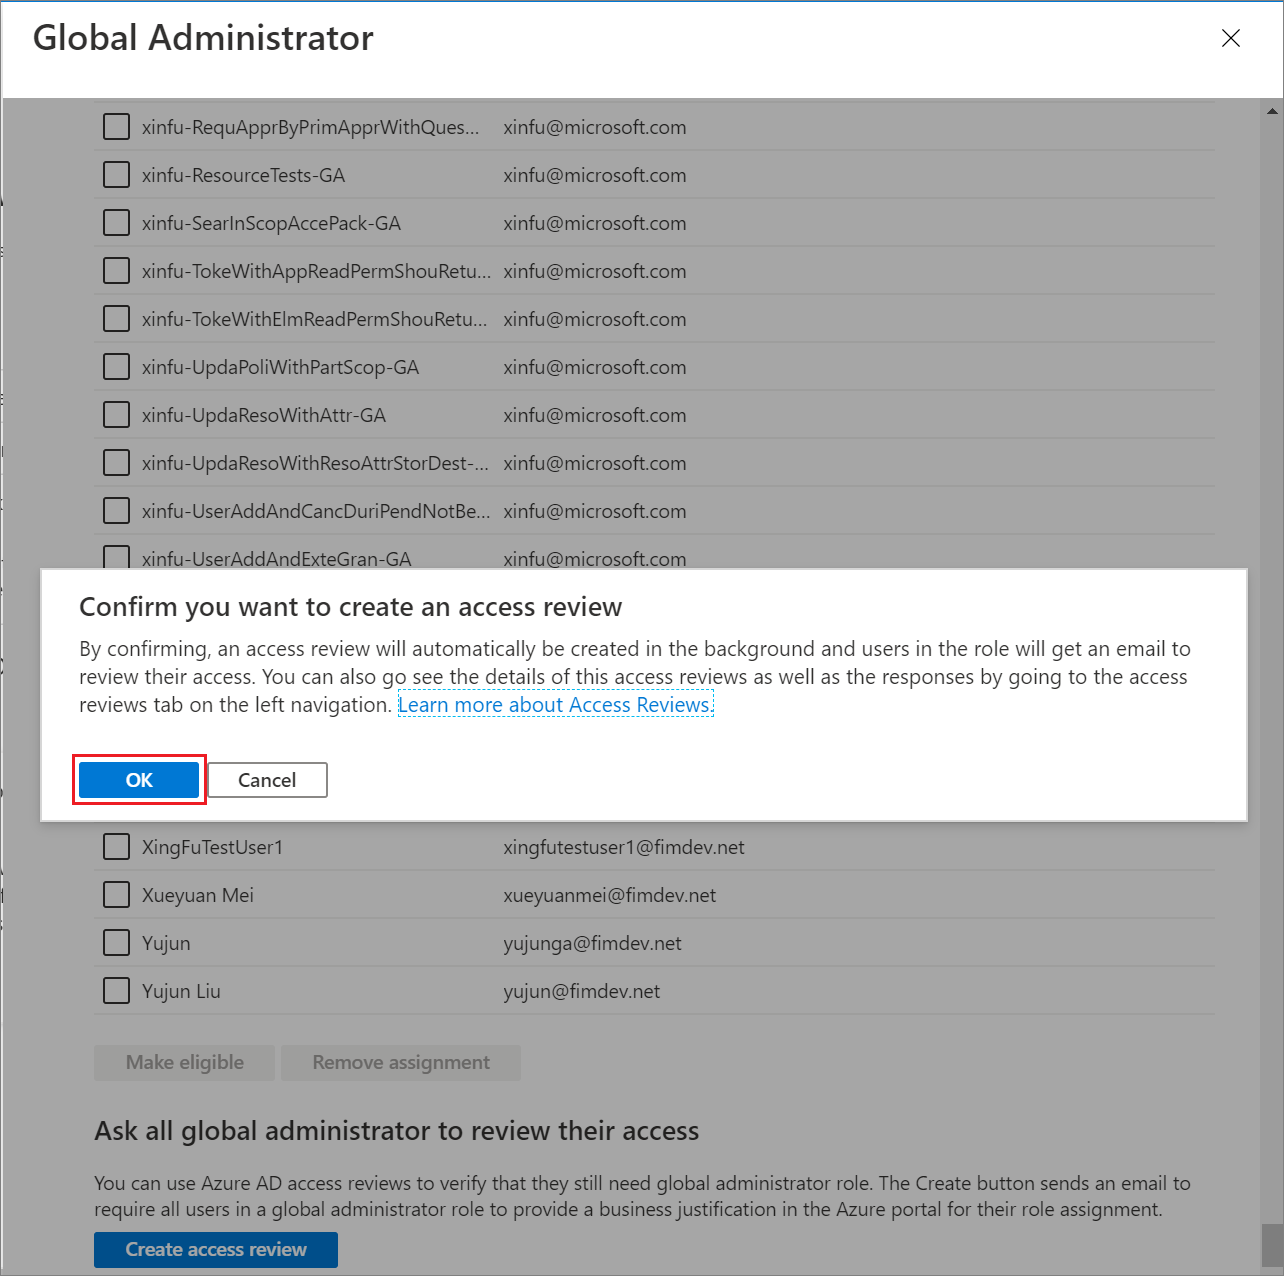 Captura de tela da página Administradores globais mostrando a seção de revisões de acesso.